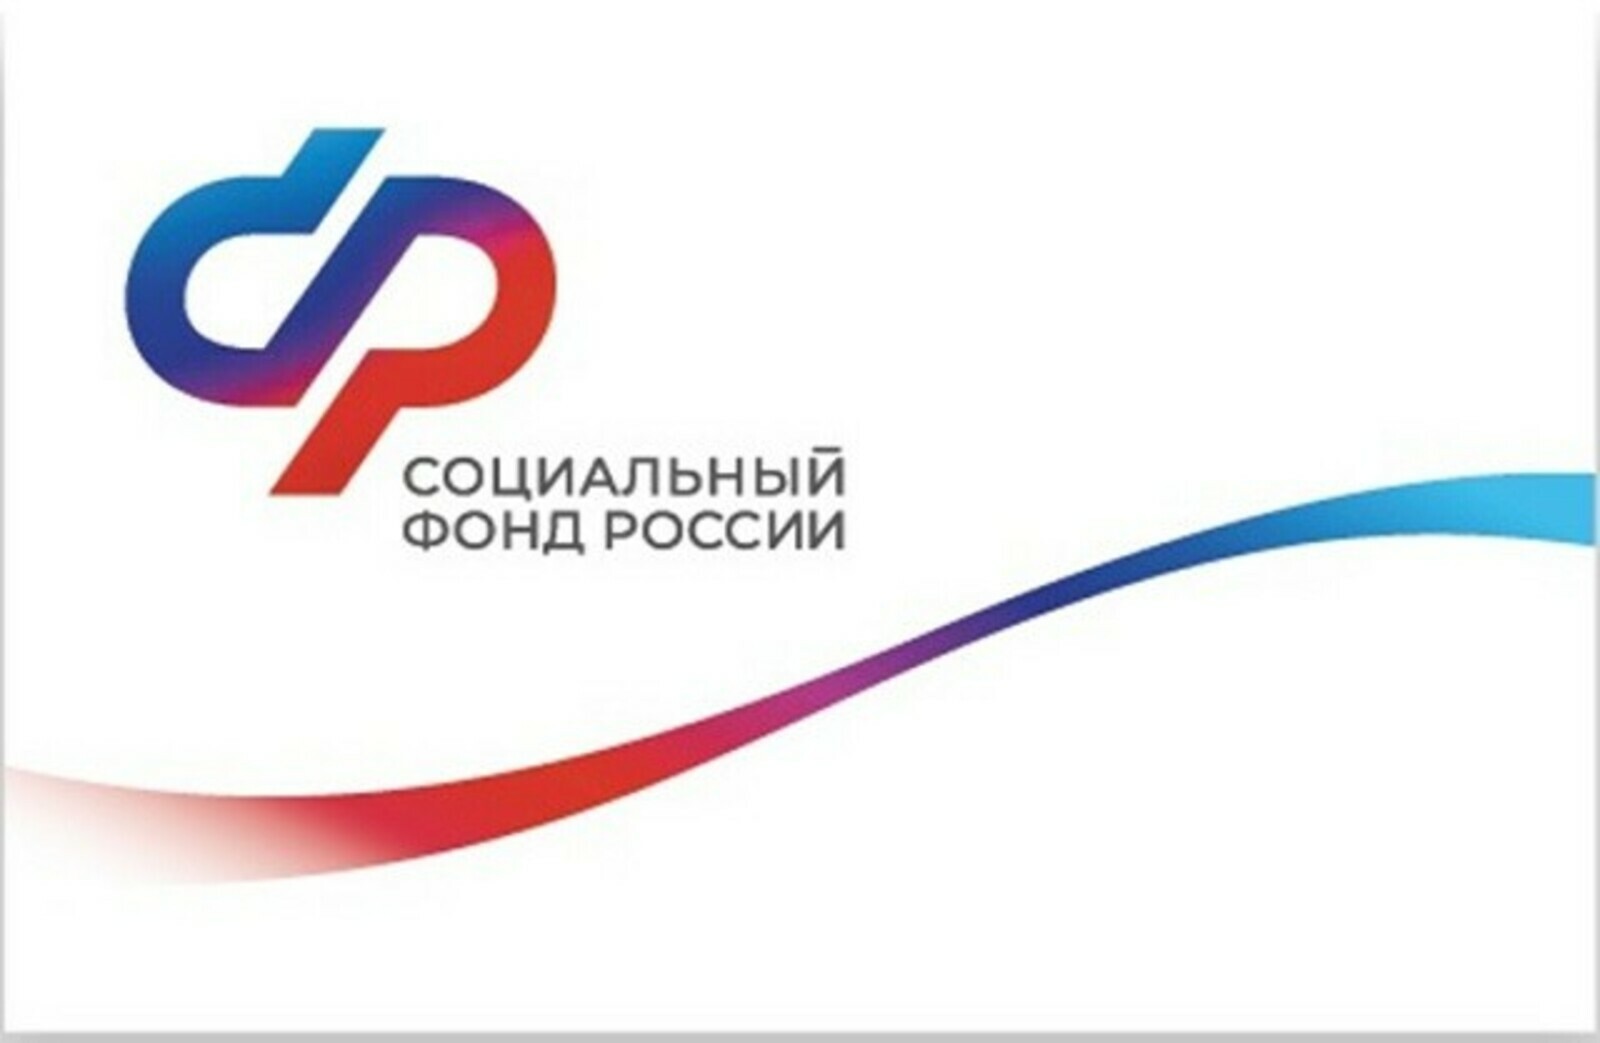 ОСФР по Республике Башкортостан компенсировало стоимость полиса ОСАГО более 160 гражданам с инвалидностью